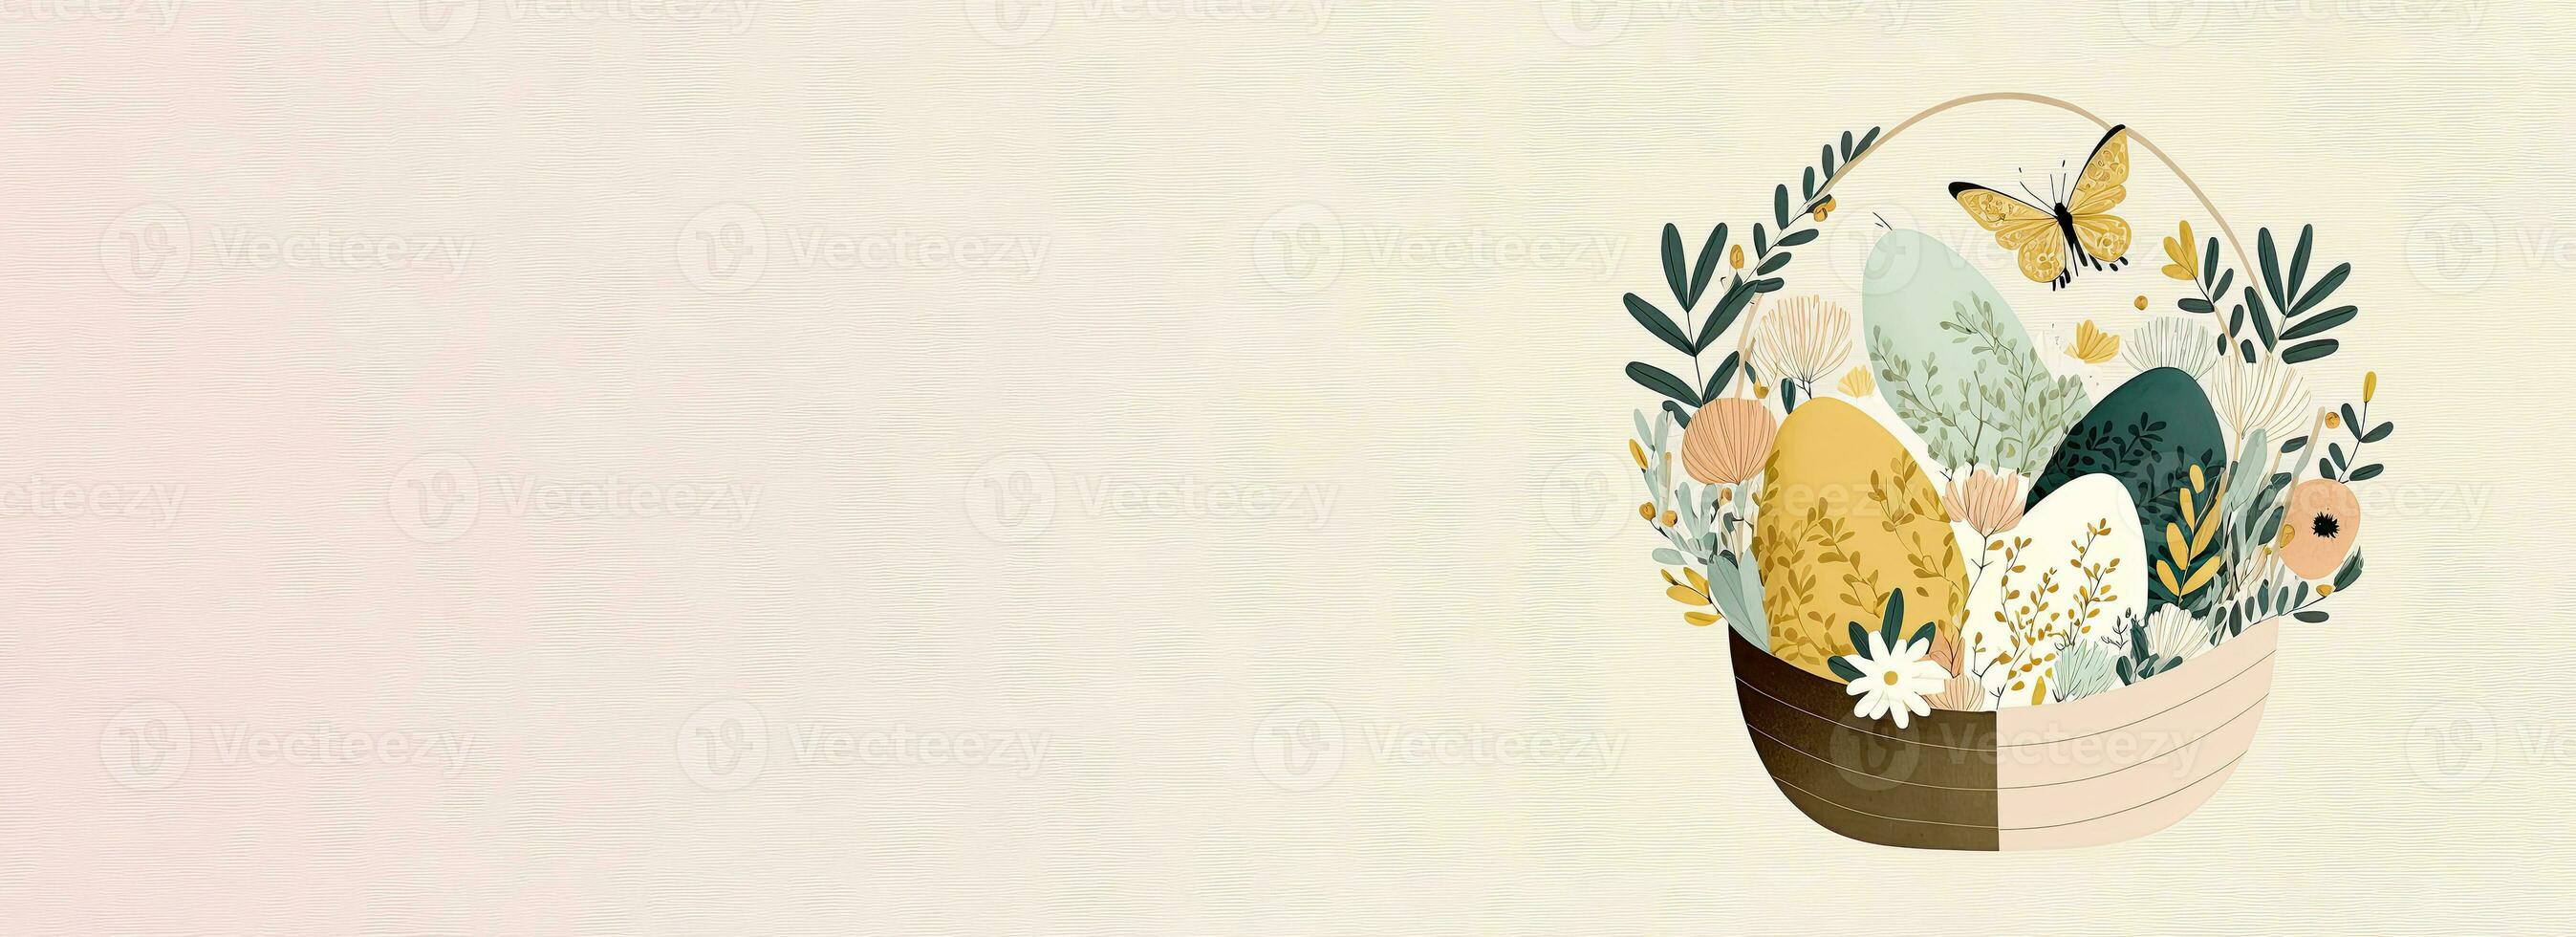 plano estilo floral Páscoa ovo cesta com borboleta personagem contra cósmico café com leite fundo e cópia de espaço. feliz Páscoa conceito. foto